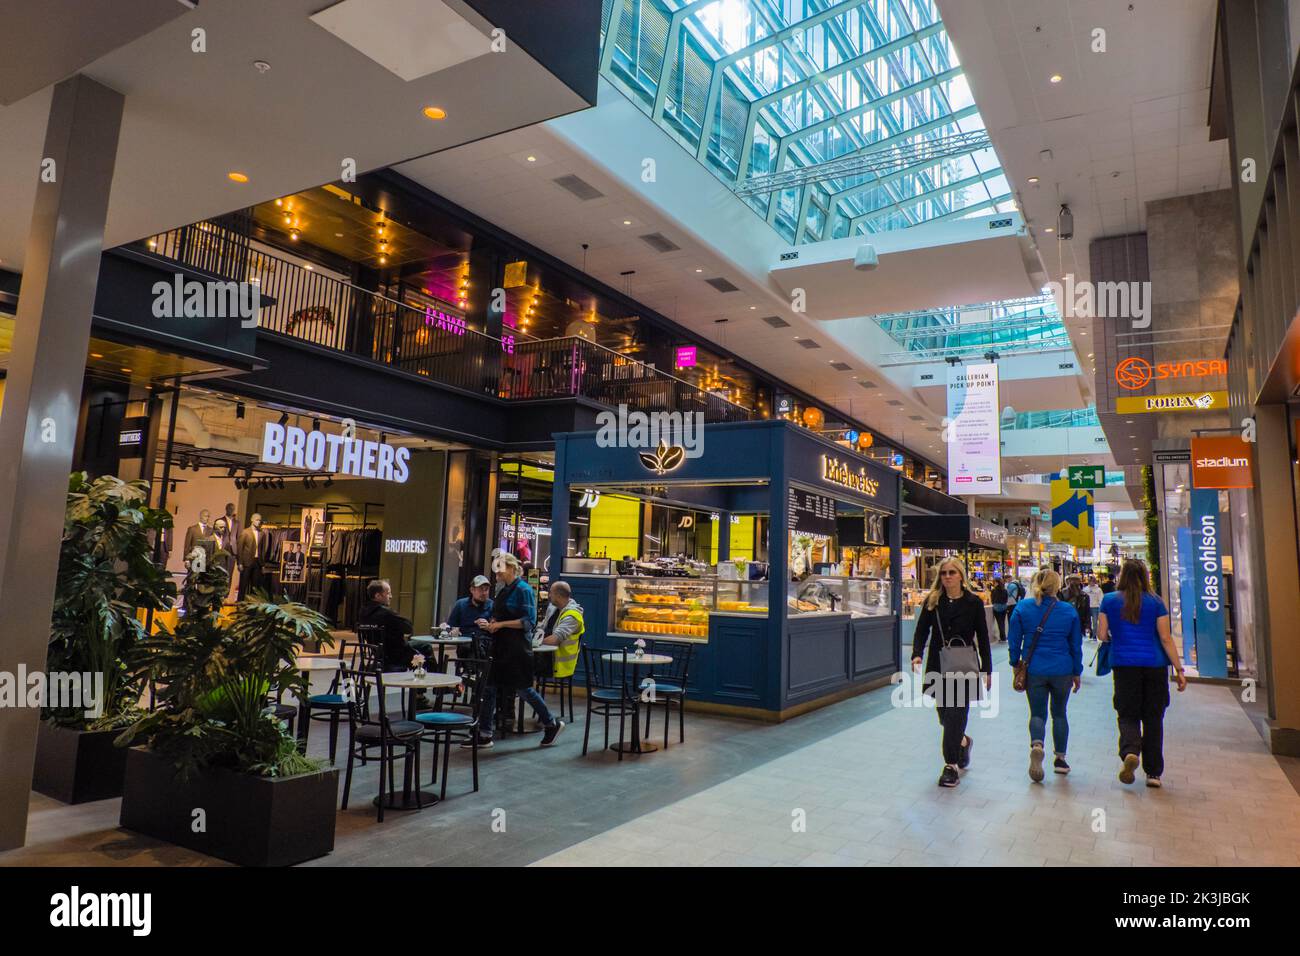 Gallerian, centro commerciale, Norrmalm, Stoccolma, Svezia Foto Stock